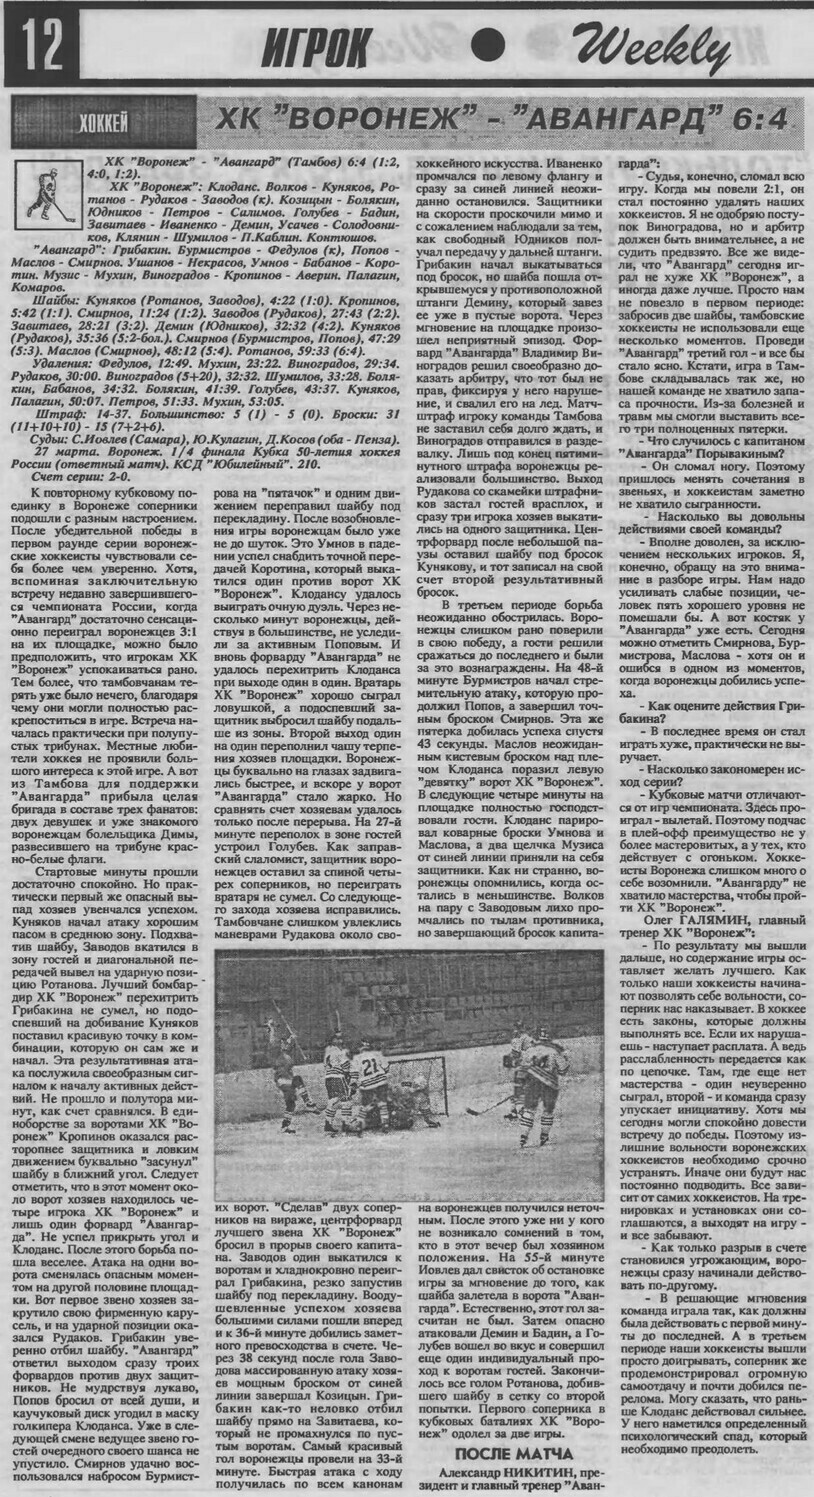 Газета "Игрок" (Воронеж) №12 от 04.04.1997г.